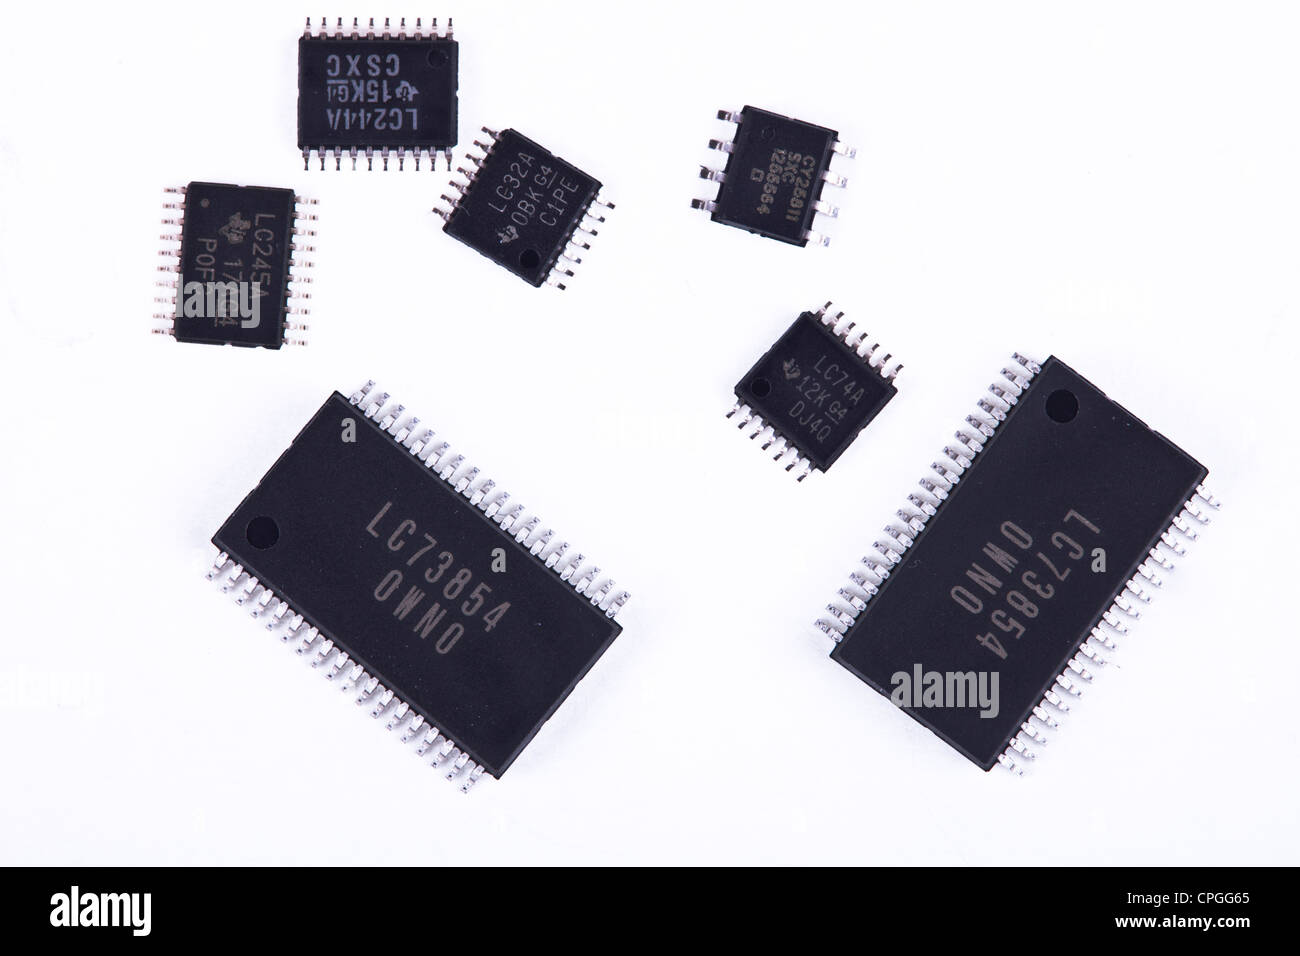 Verschiedenen IC (integrierte Schaltung) in der Versammlung der SMT verwendeten Chips / SMD Leiterplatten in der Elektronikindustrie. Stockfoto